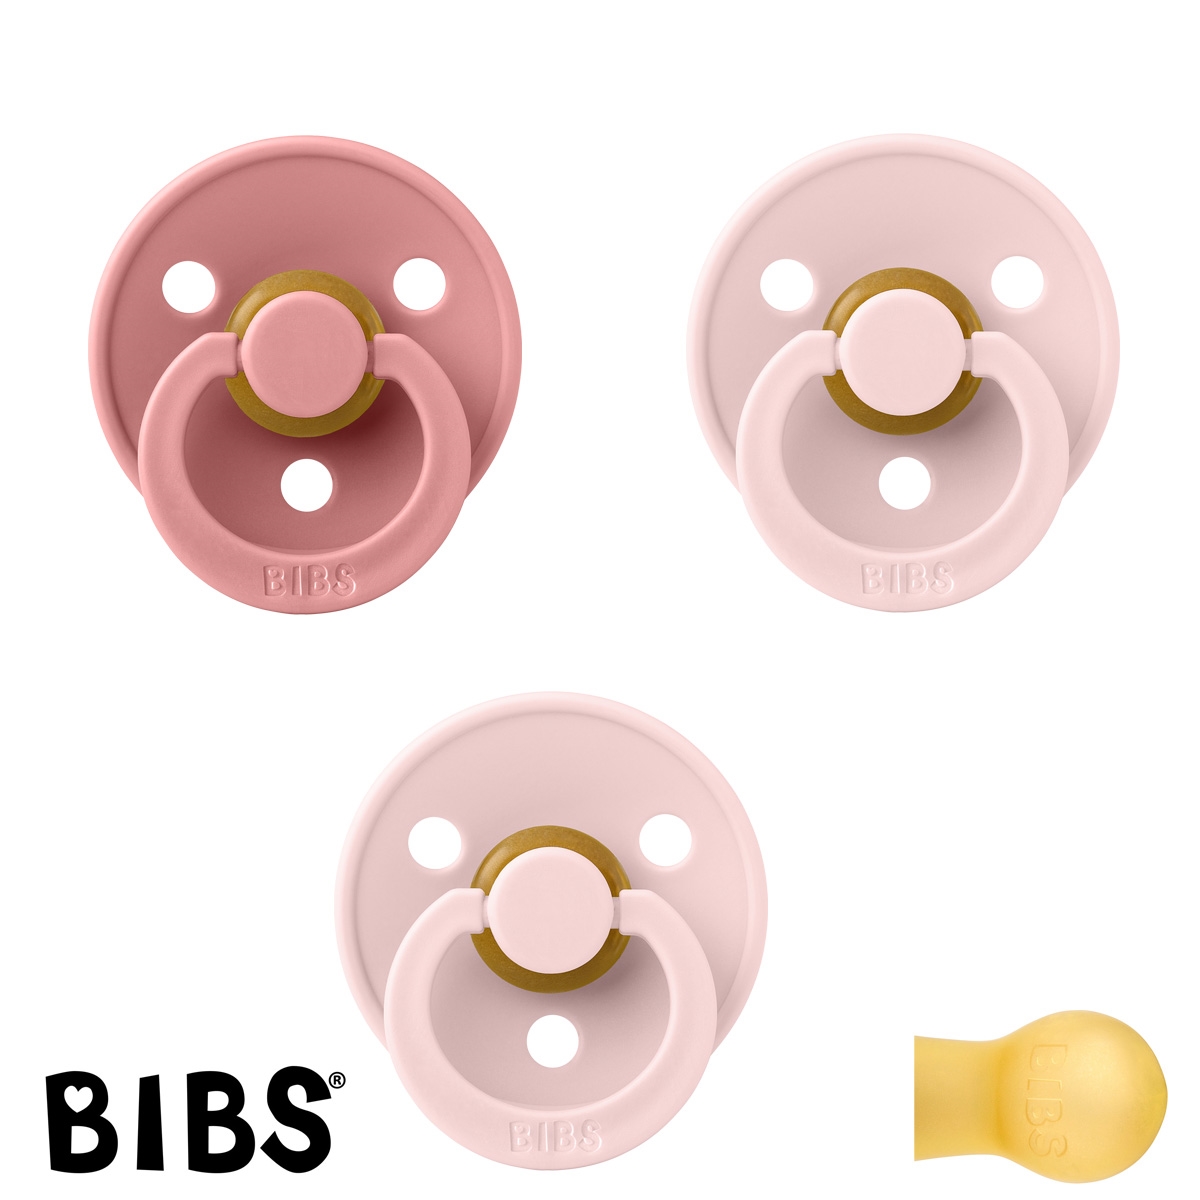 BIBS Colour Schnuller mit Namen, Gr. 1, 1 Dusty Pink, 2 Blossom, Rund Latex, (3er Pack)